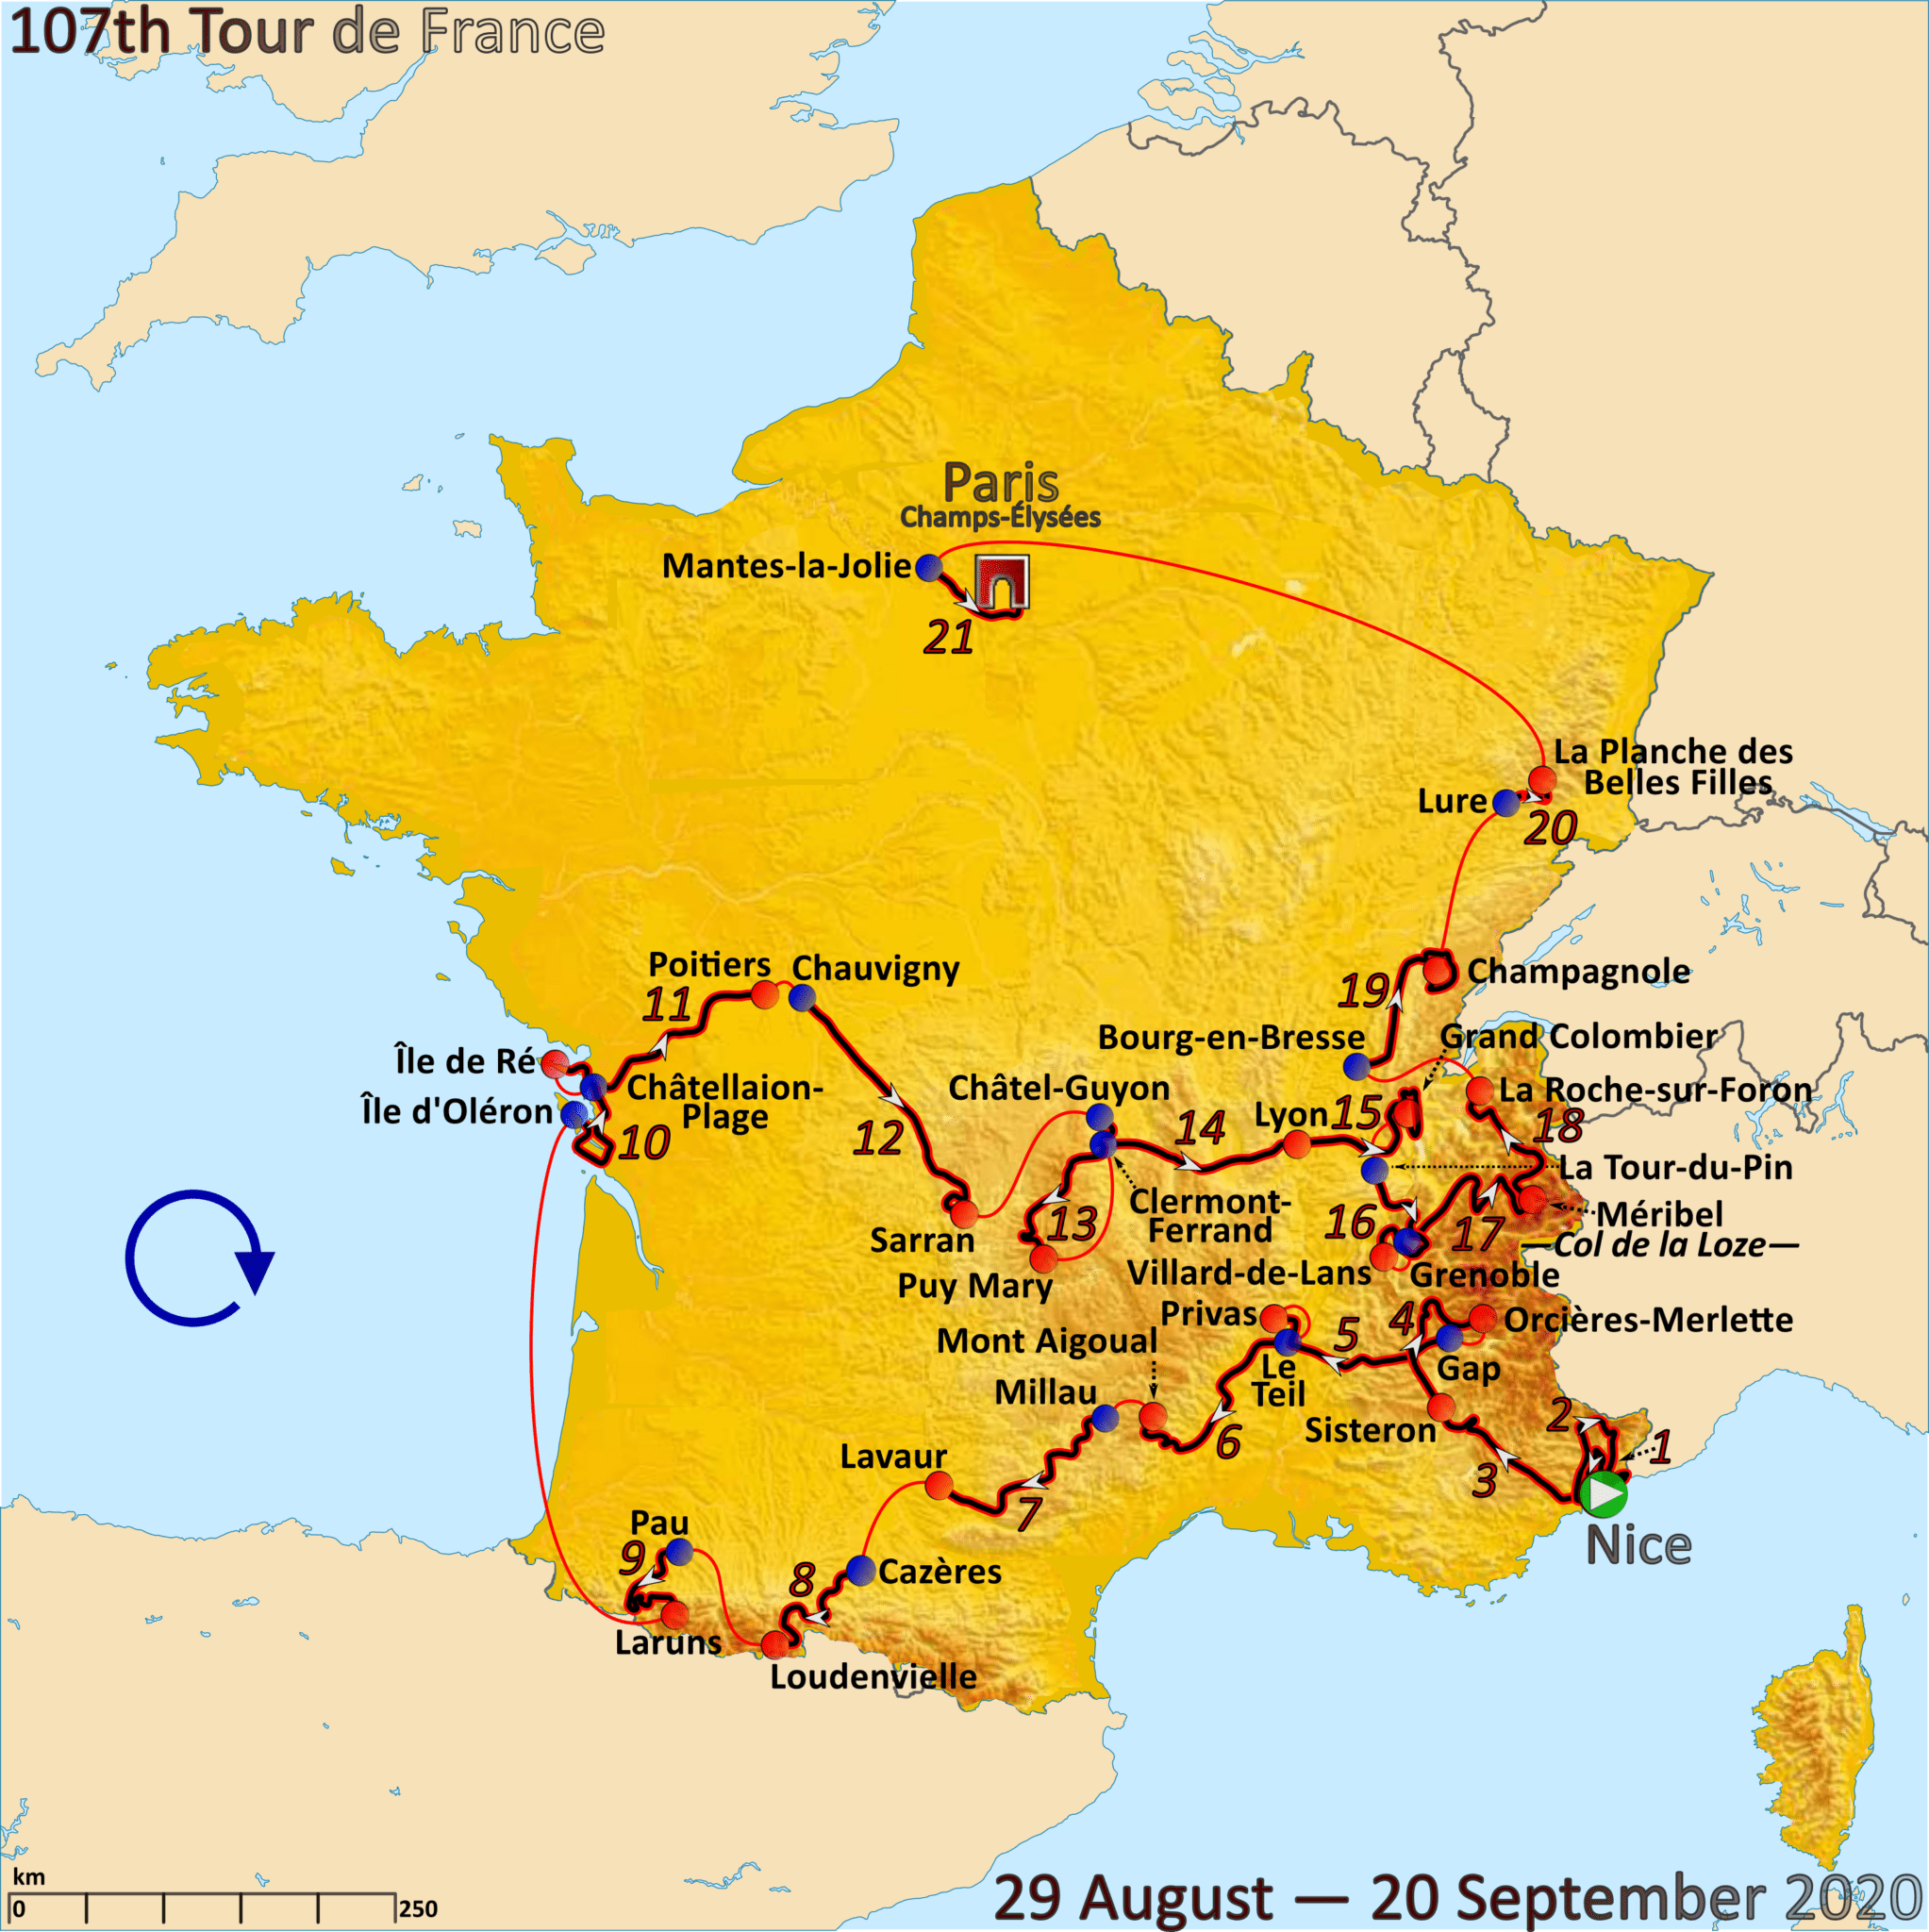 status of tour de france